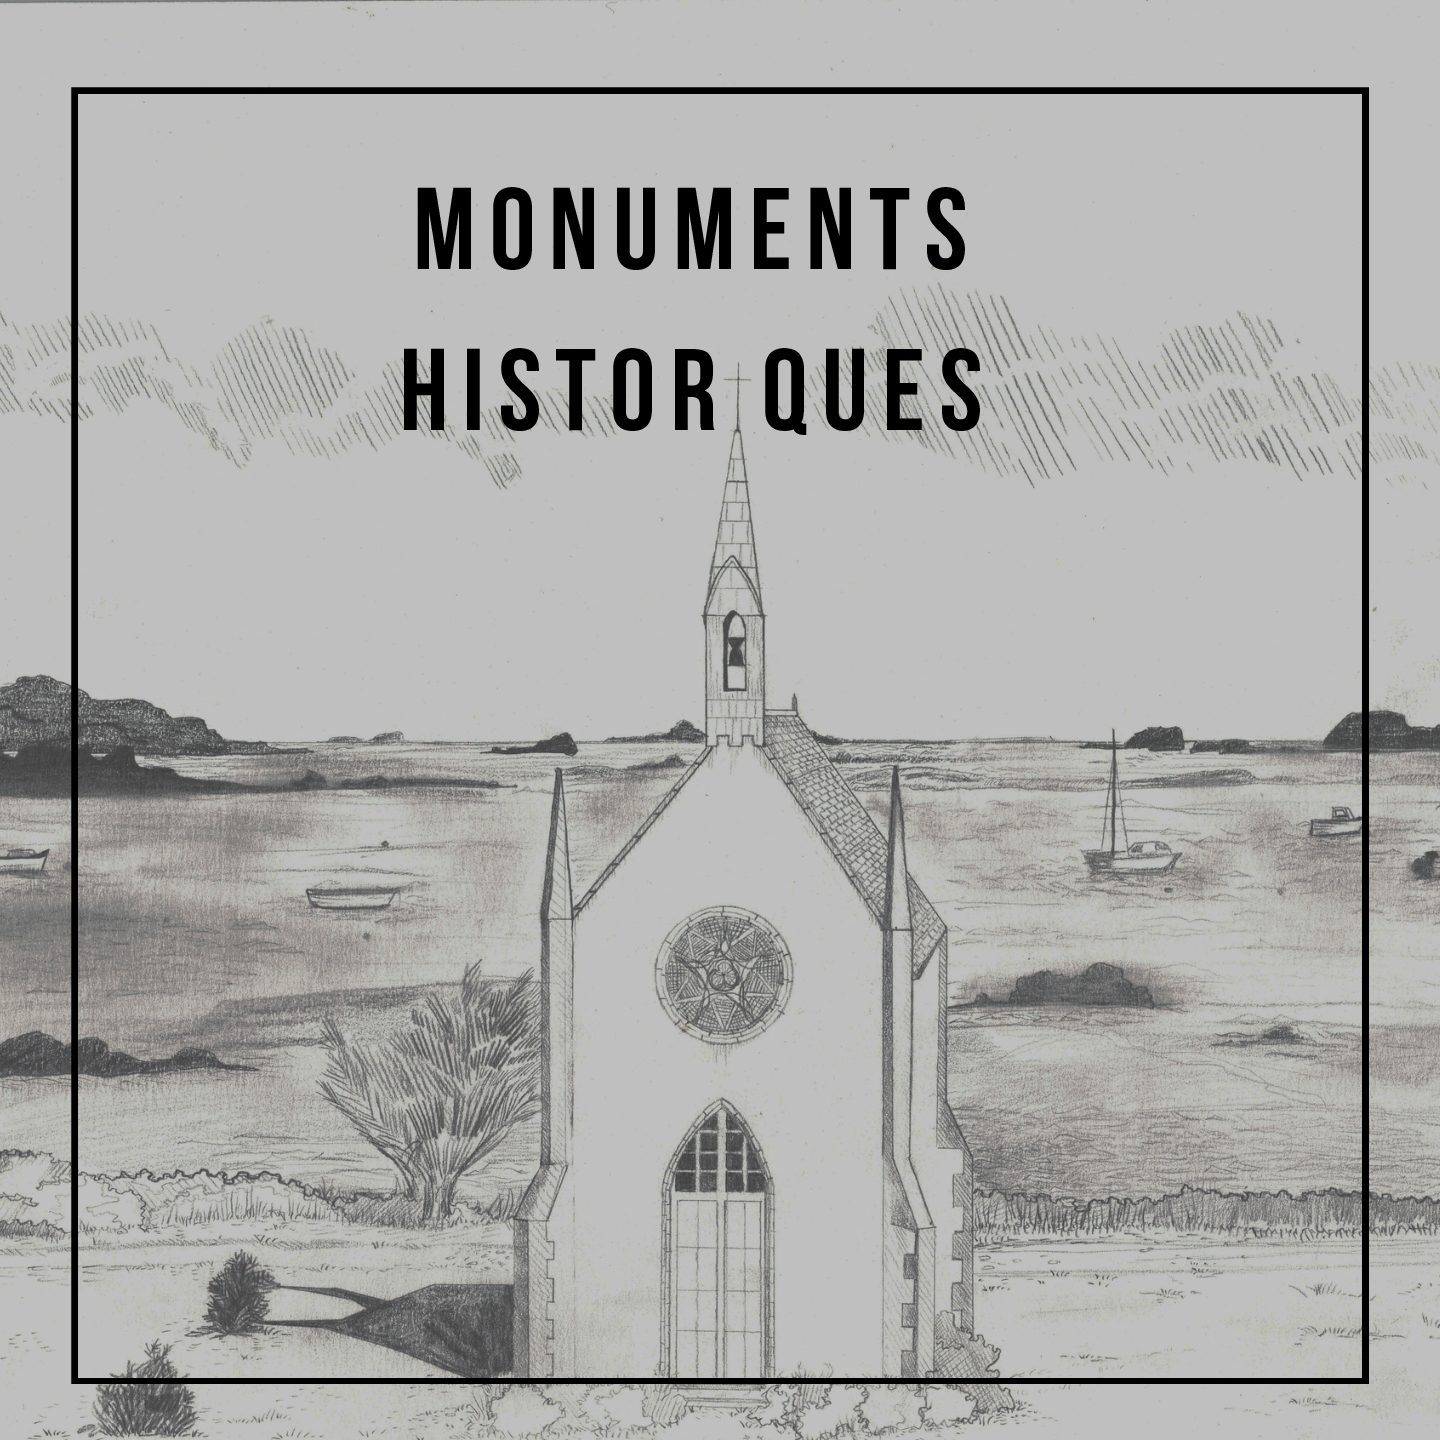 Investir dans l’histoire : comment les monuments historiques peuvent être un placement rentable